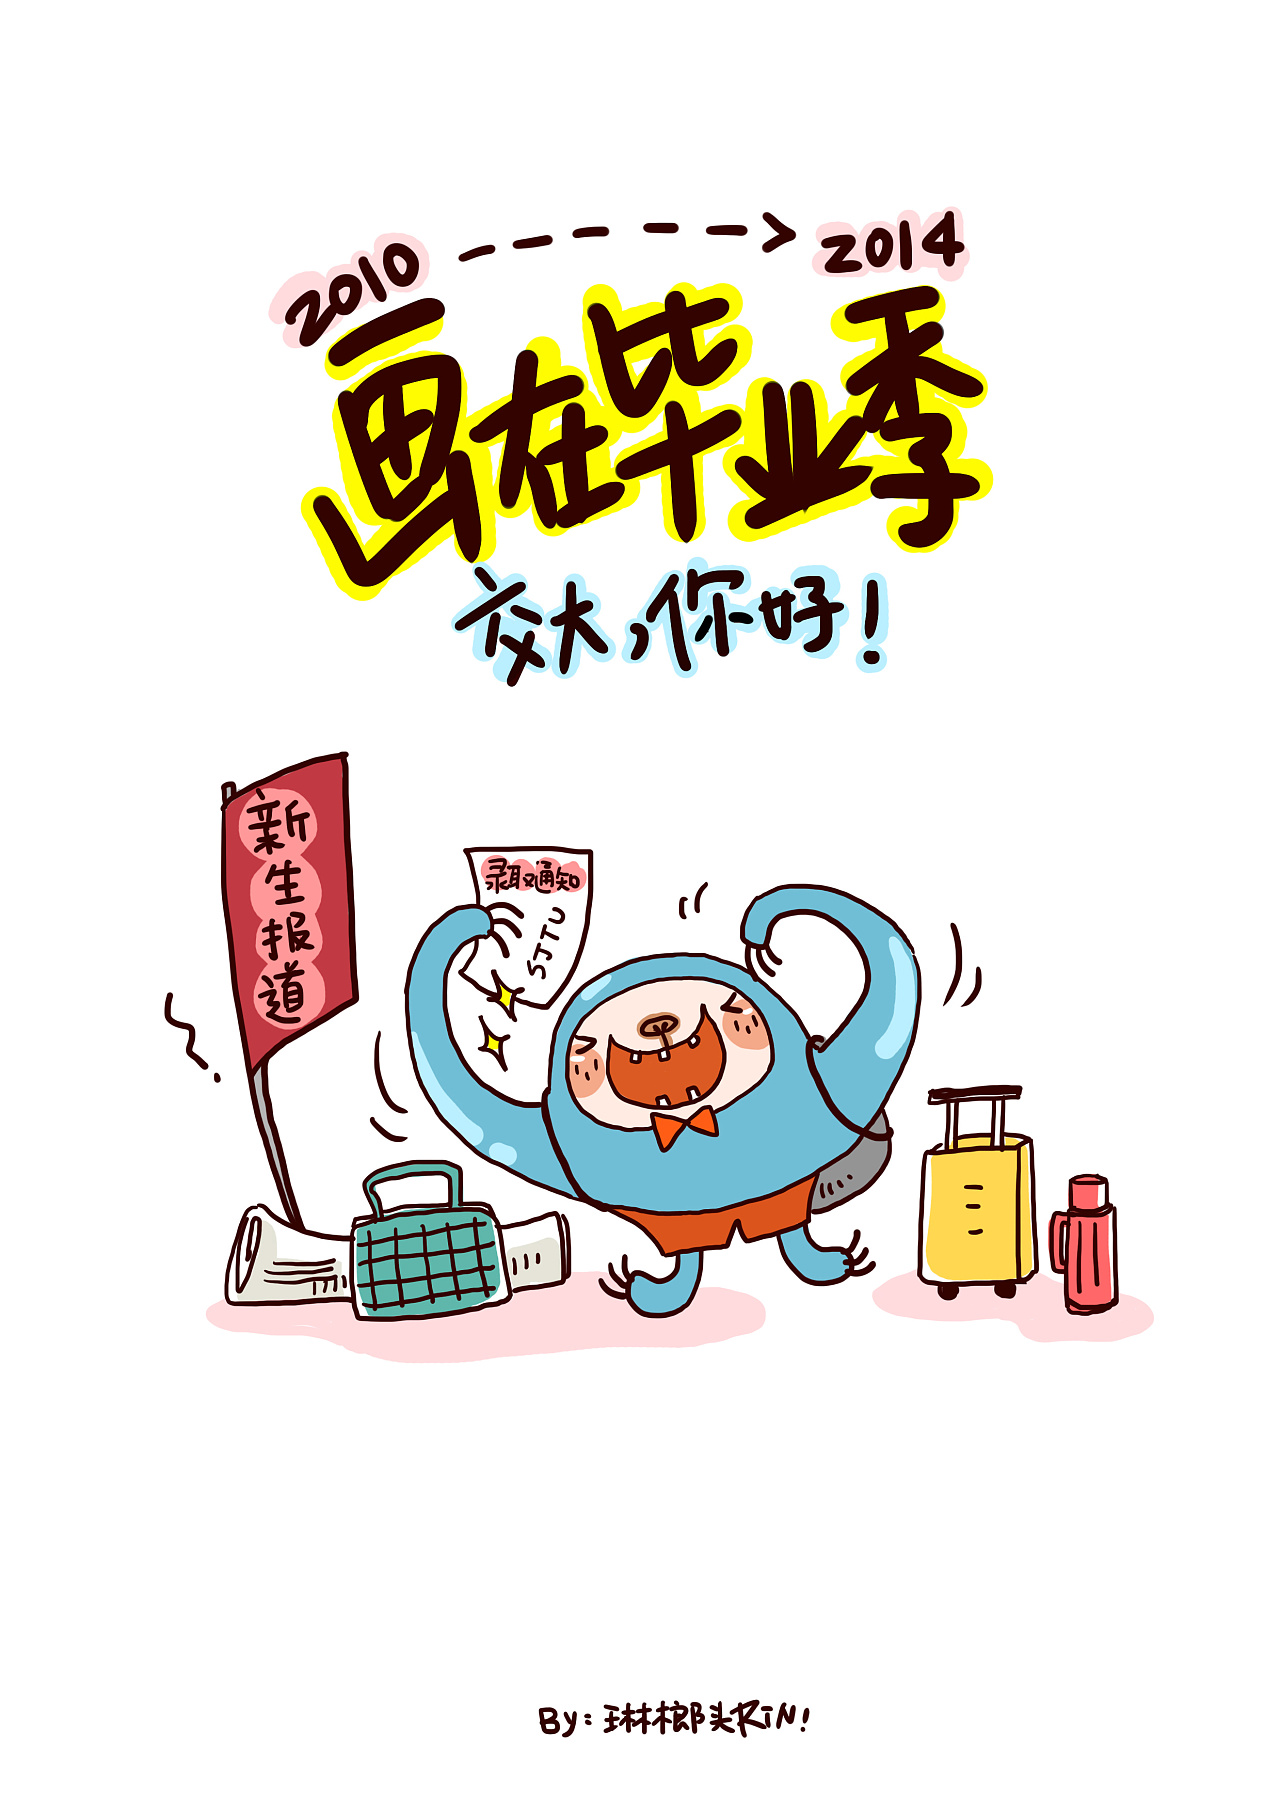 红黄色放肆毕业季漫画青年大学生人物插画手绘校园分享中文海报 - 模板 - Canva可画